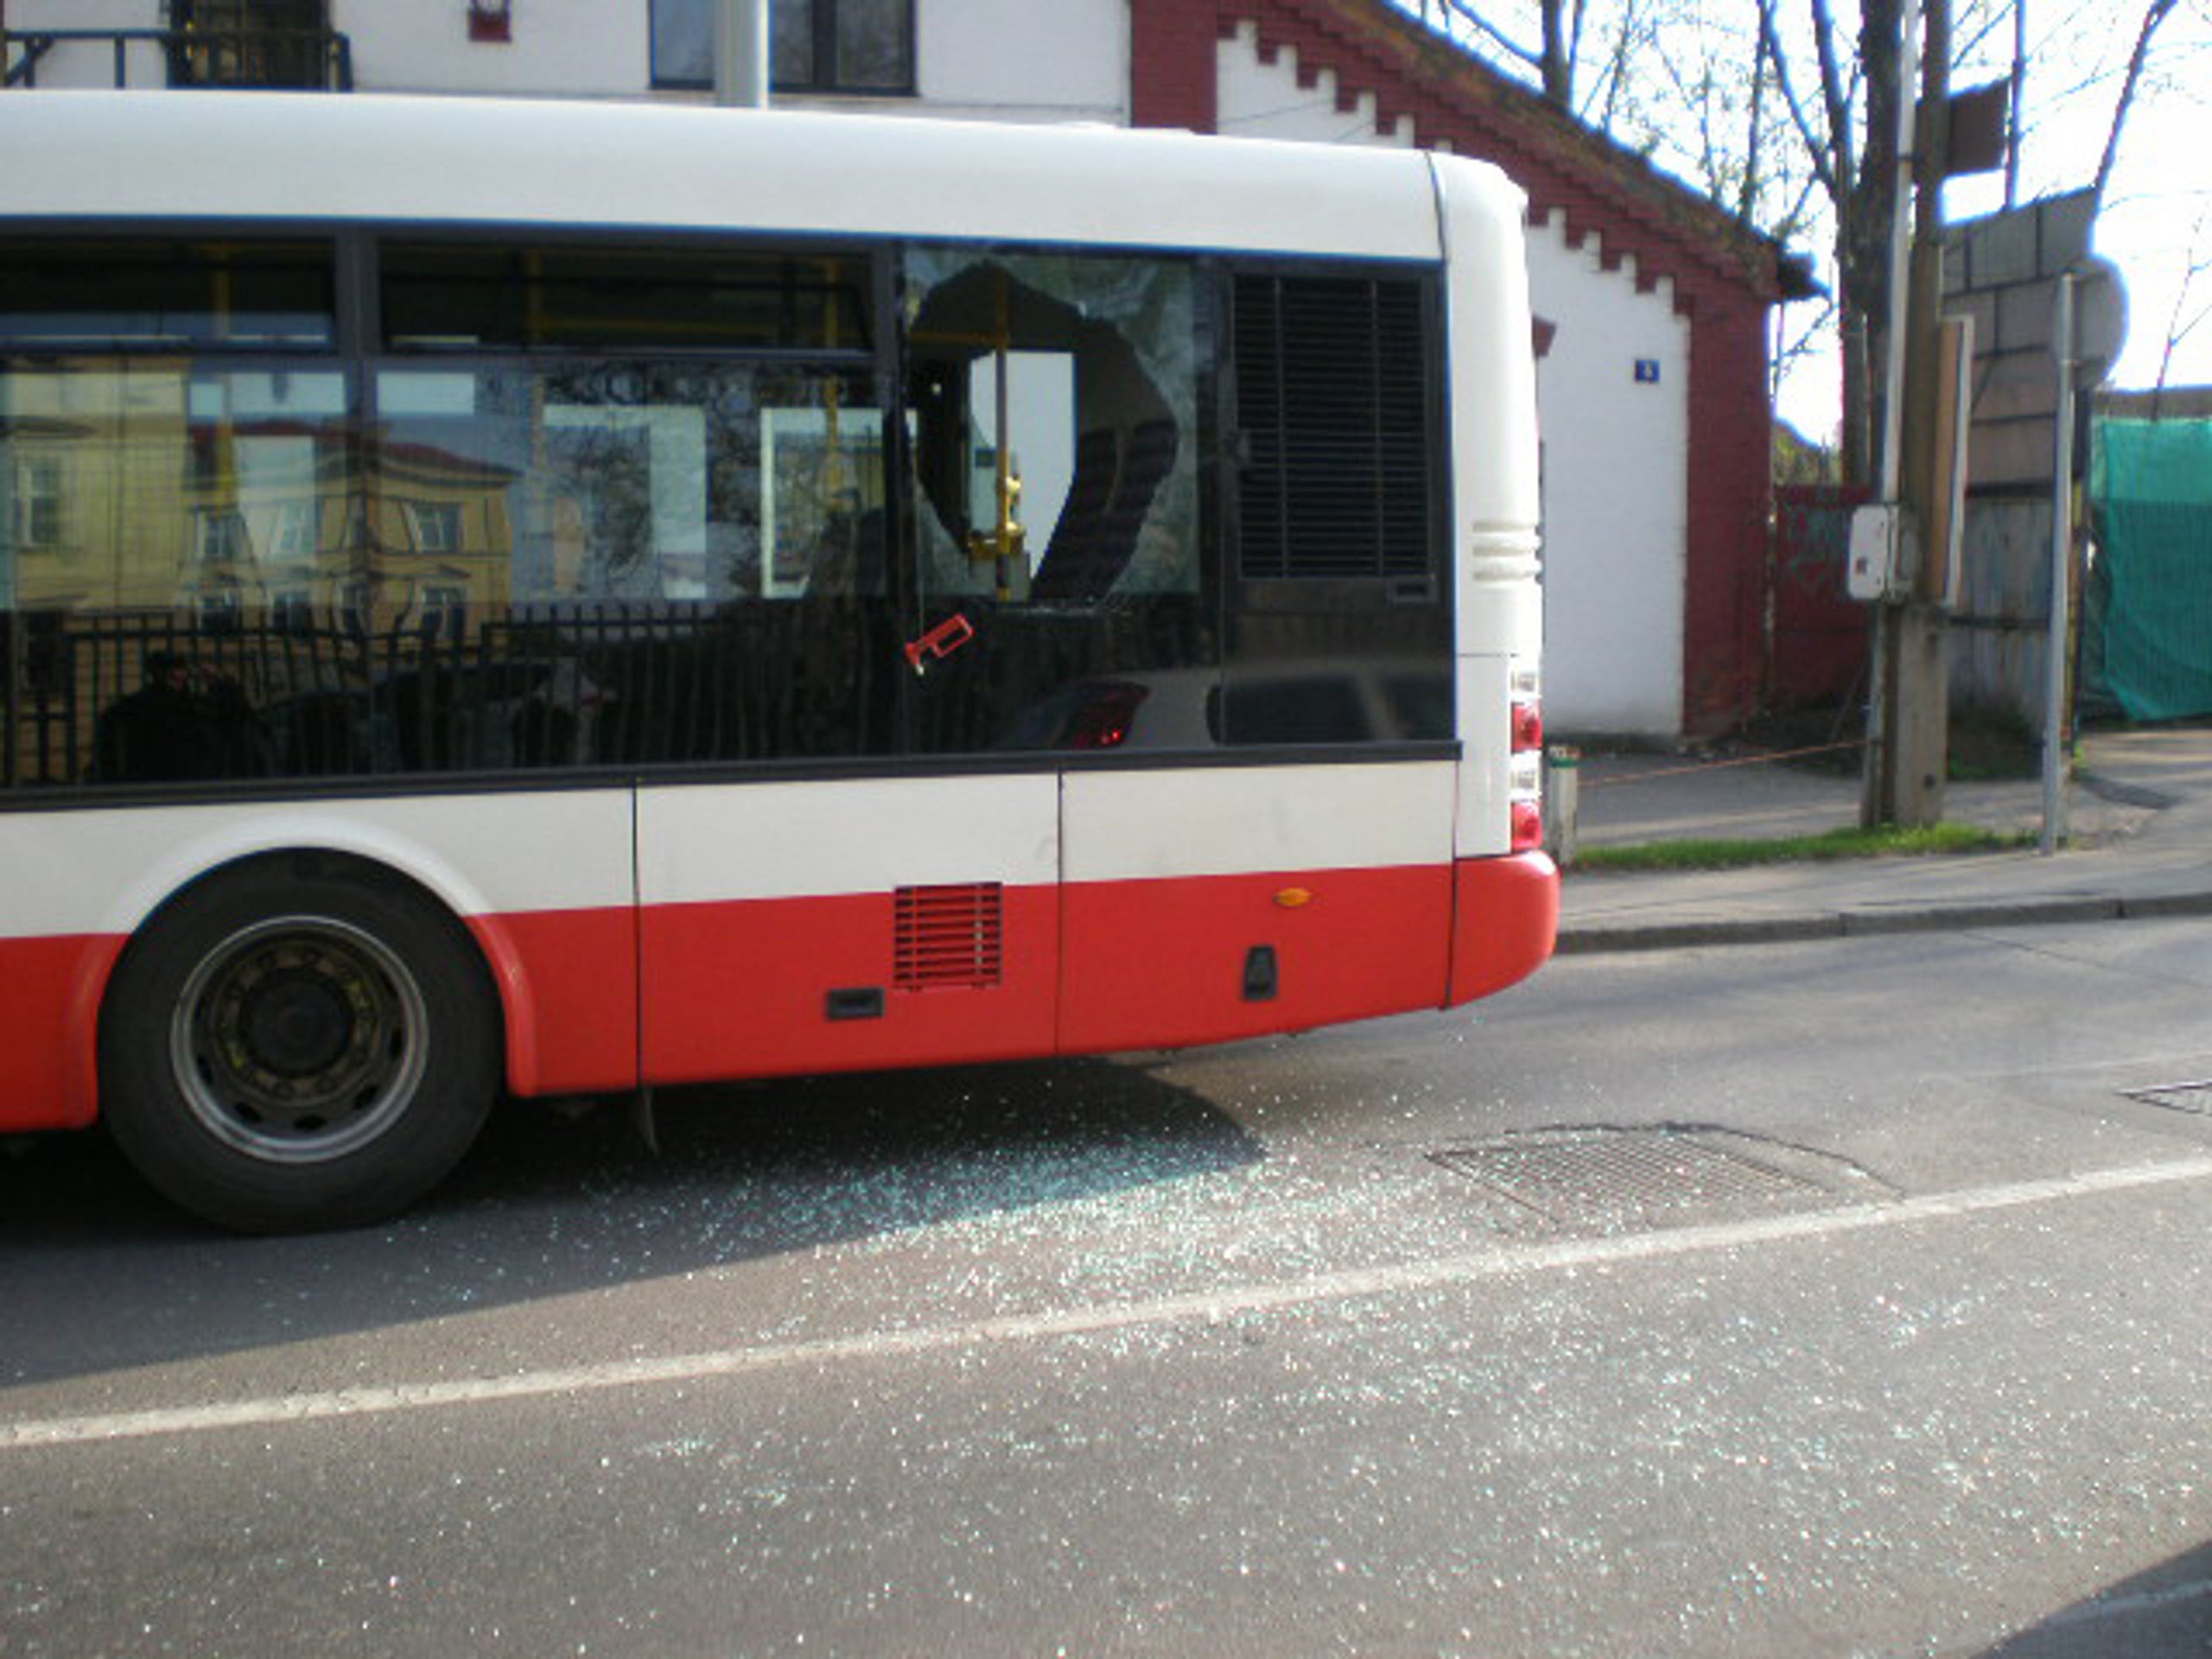 Muž vykopl v koloně okno autobusu a vyskočil - 2 - GALERIE: Muž vykopl v koloně okno autobusu a vyskočil (1/5)